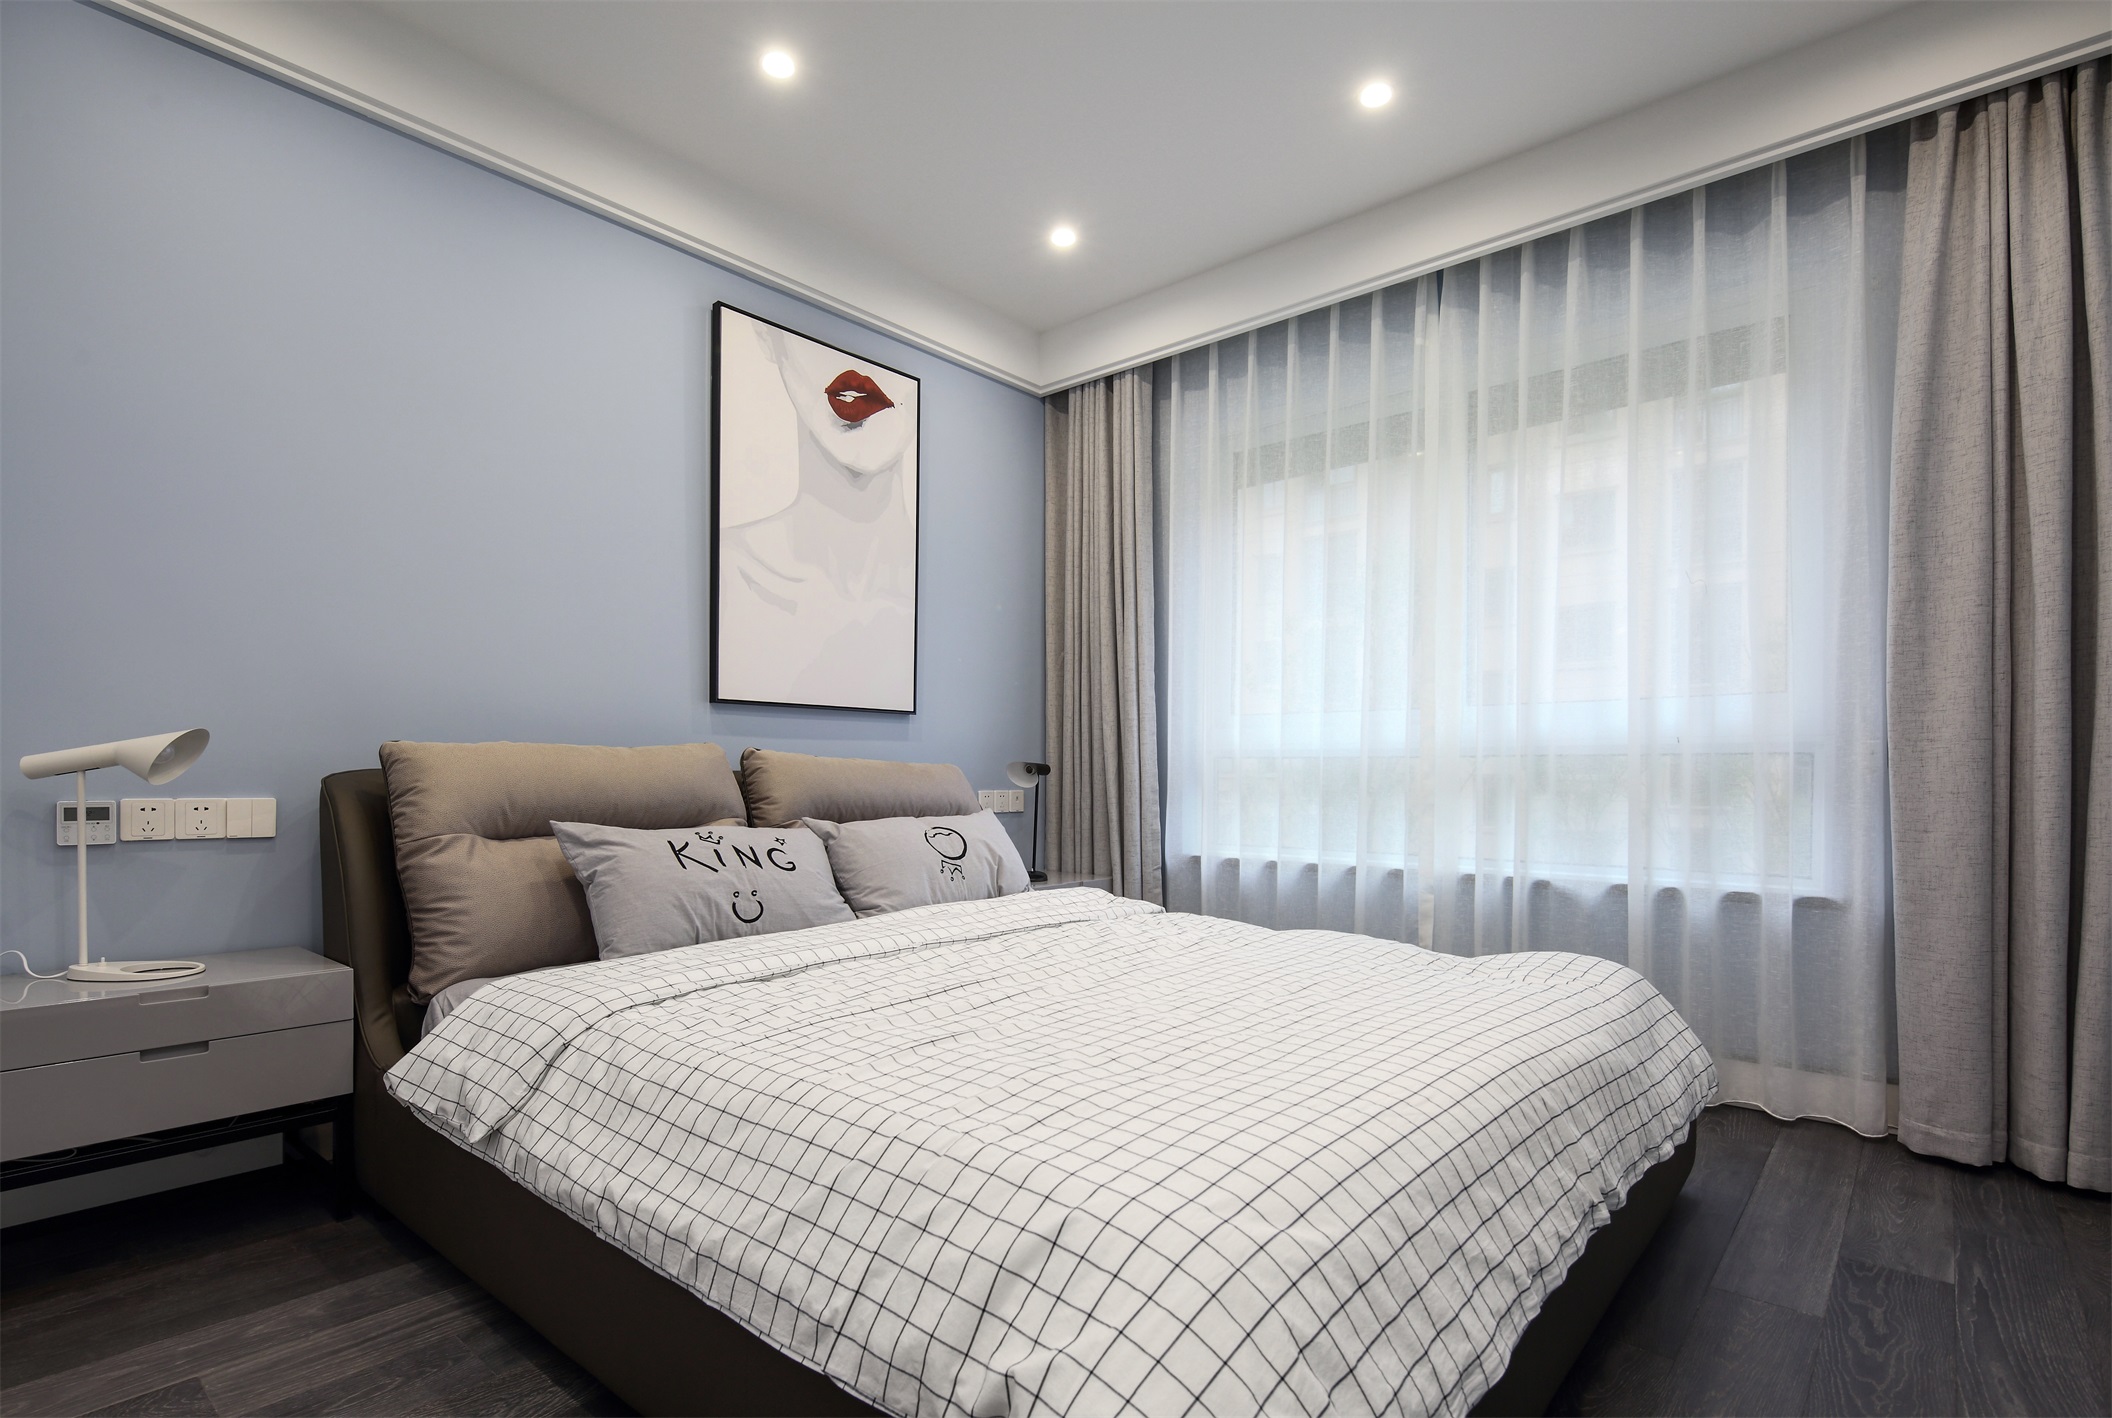 主卧床头墙是浅蓝色的背景，装饰画使空间变得更加活力，床品配色让空间充满了舒适温情的惬意感。